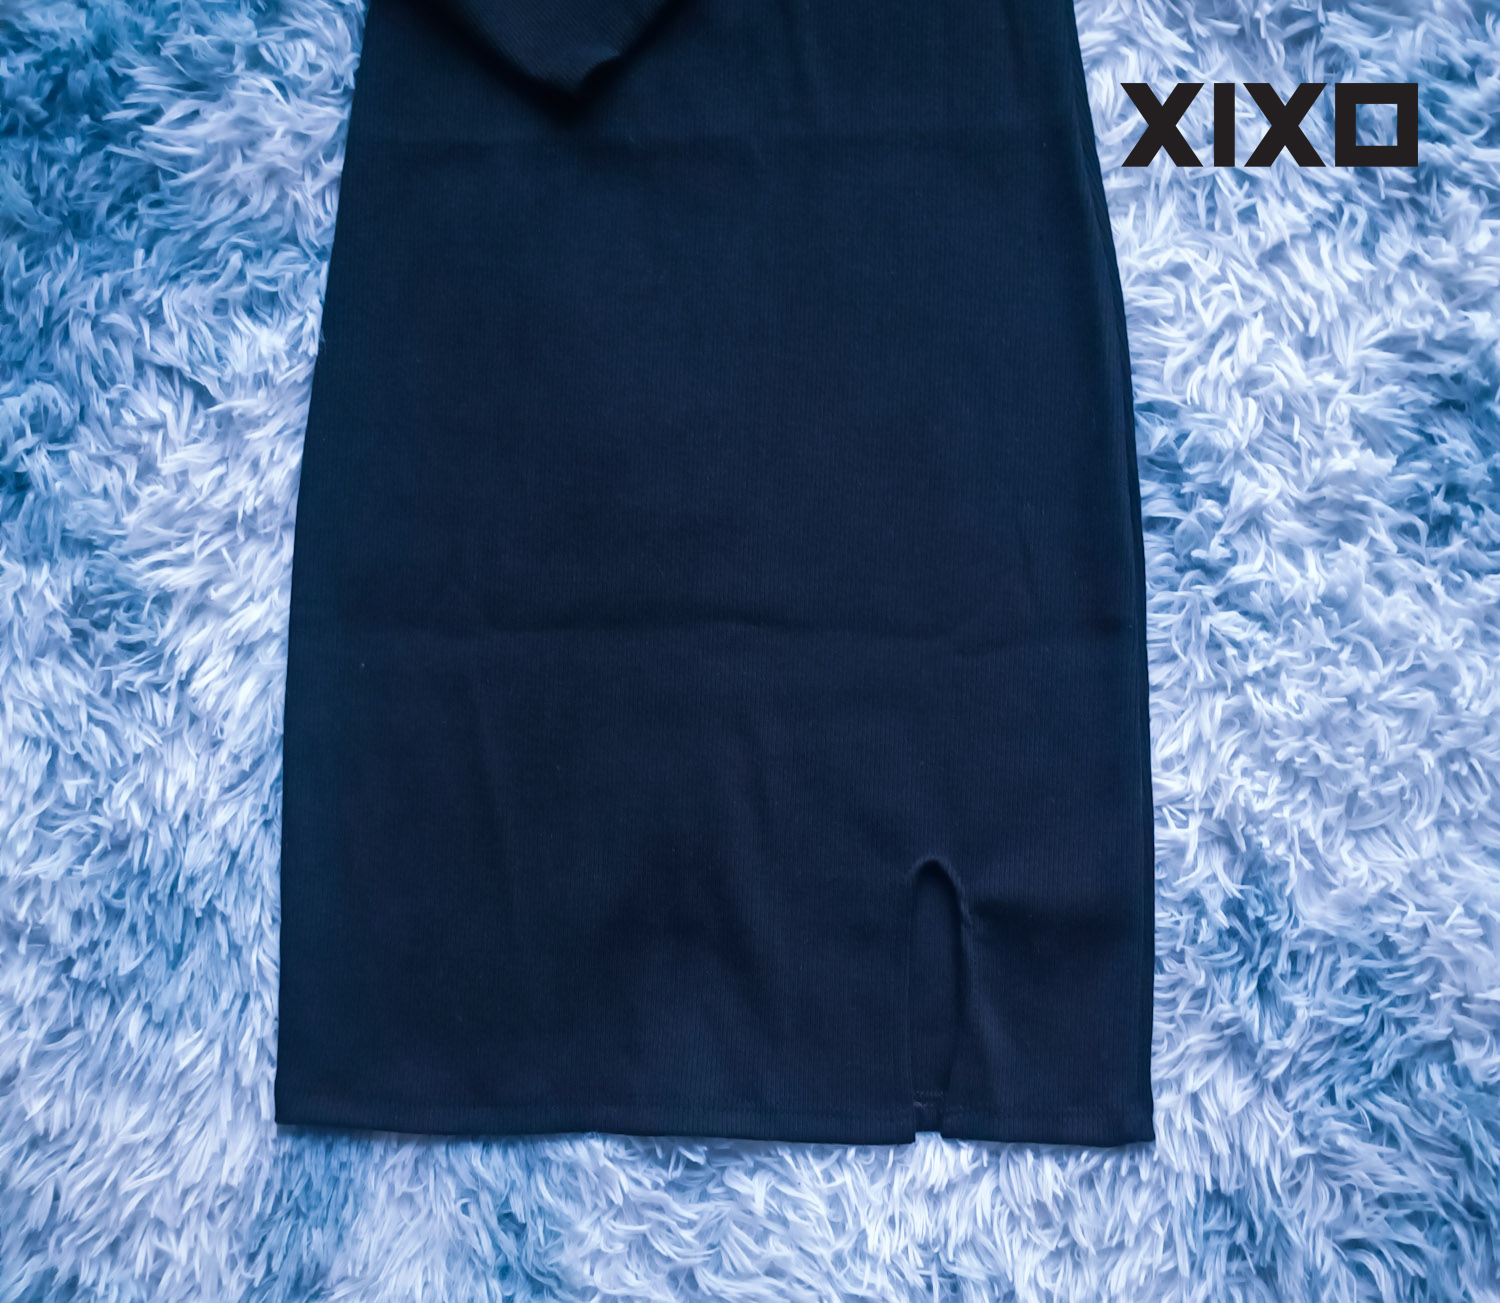 Đầm body tay dài cổ vuông xẻ tà chất thun gân chính phẩm thời trang XIXO cao cấp - DAM0064